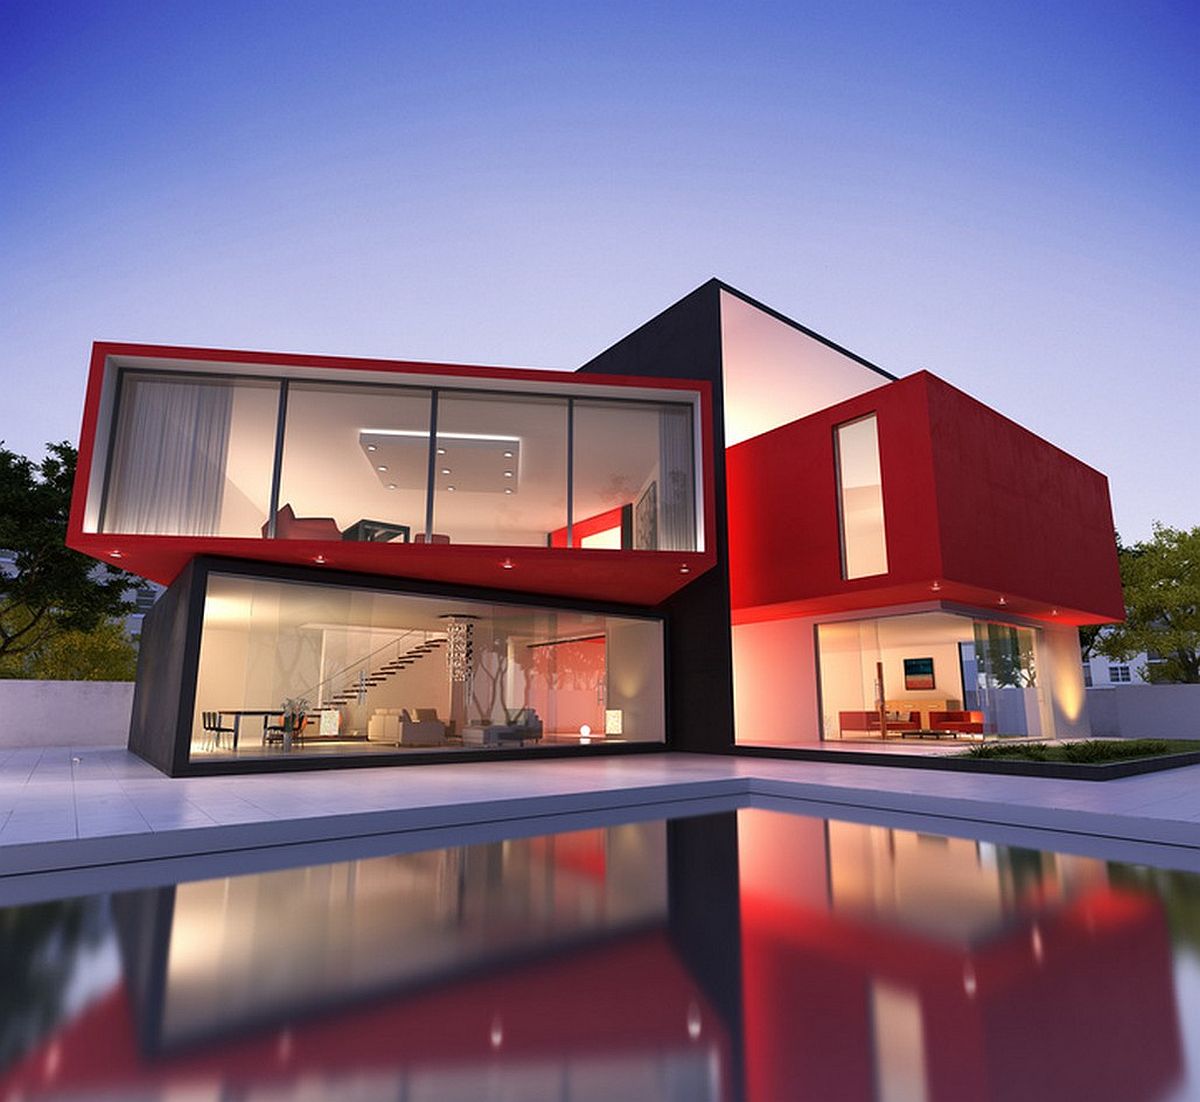 hình ảnh ngoại thất ngôi nhà phong cách tối giản hiện đại với sắc đỏ - đen cá tính.